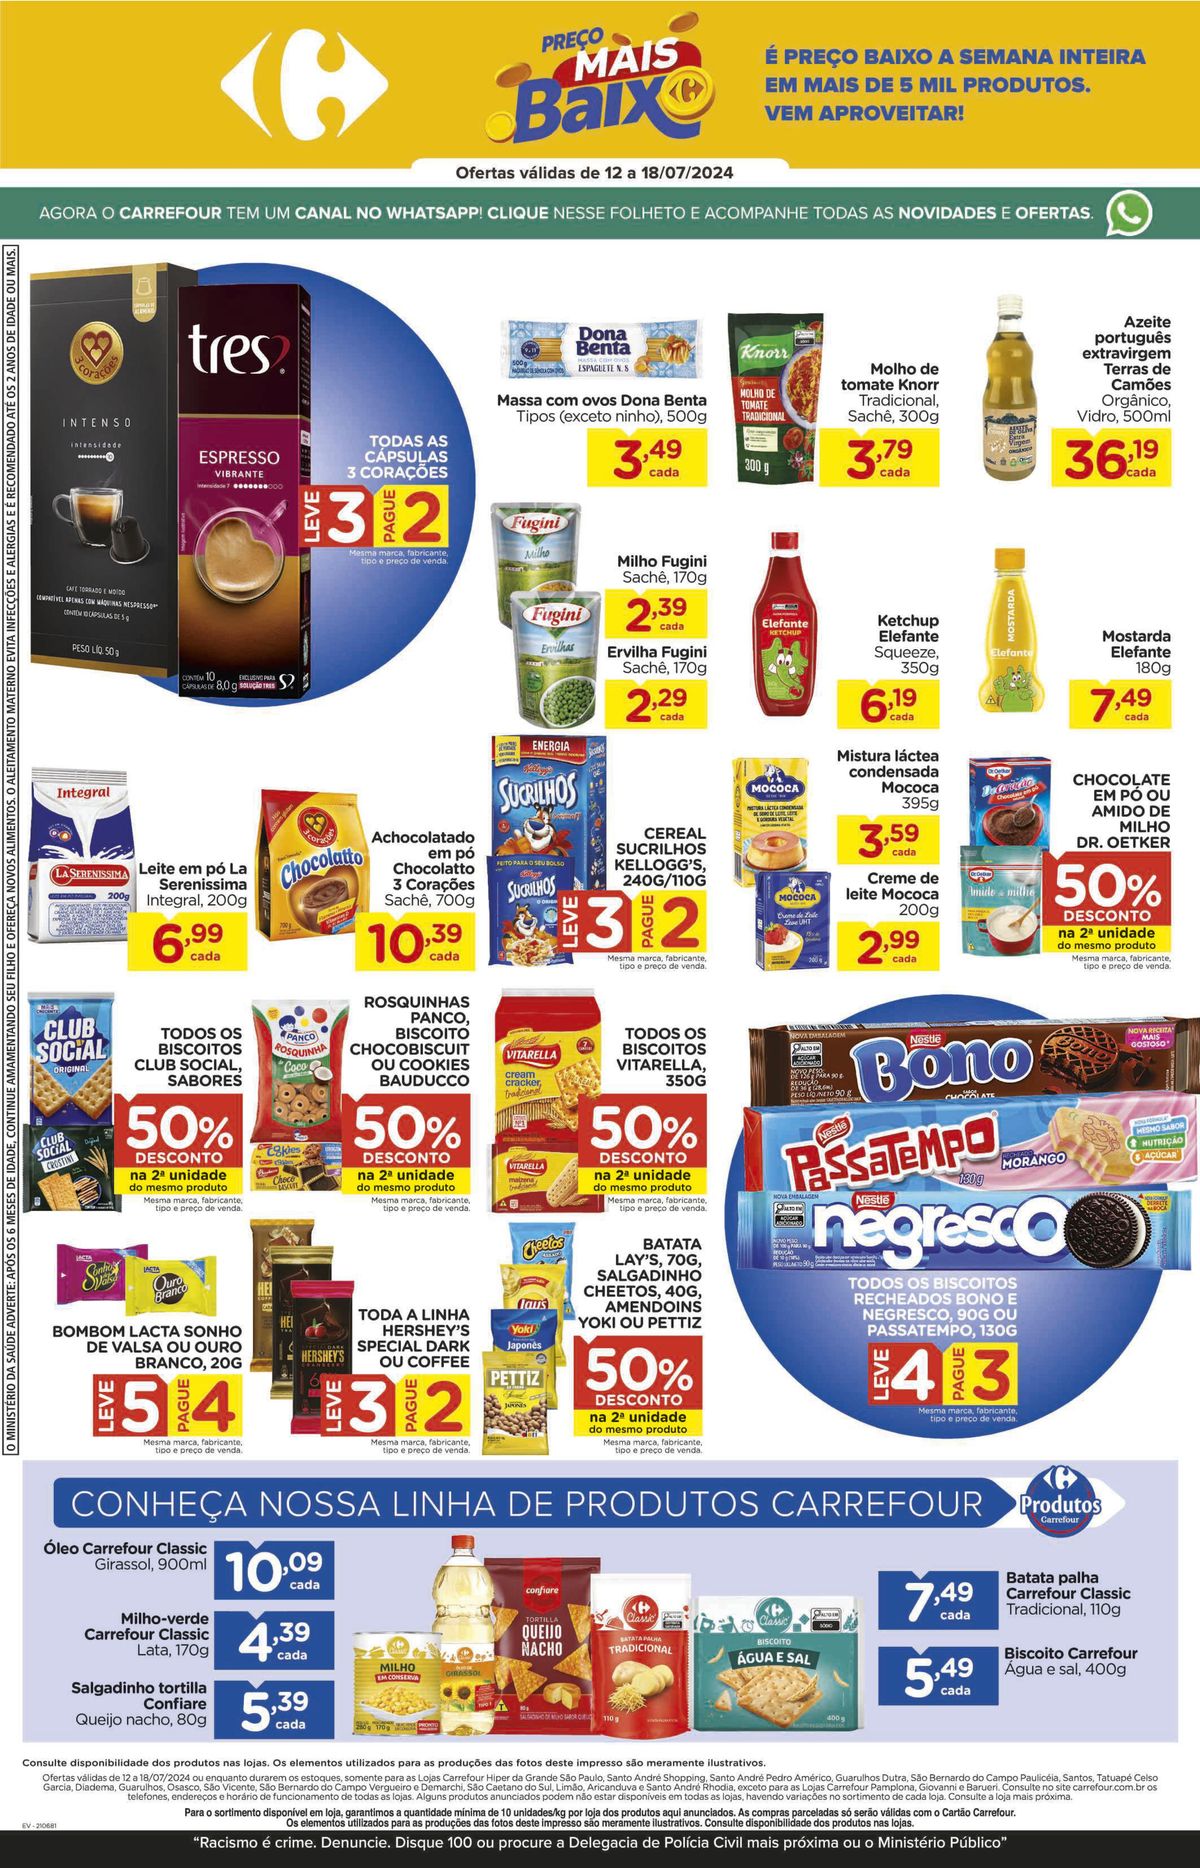 Promoção de Supermercado Carrefour: preços baixos em mais de 5 mil produtos!